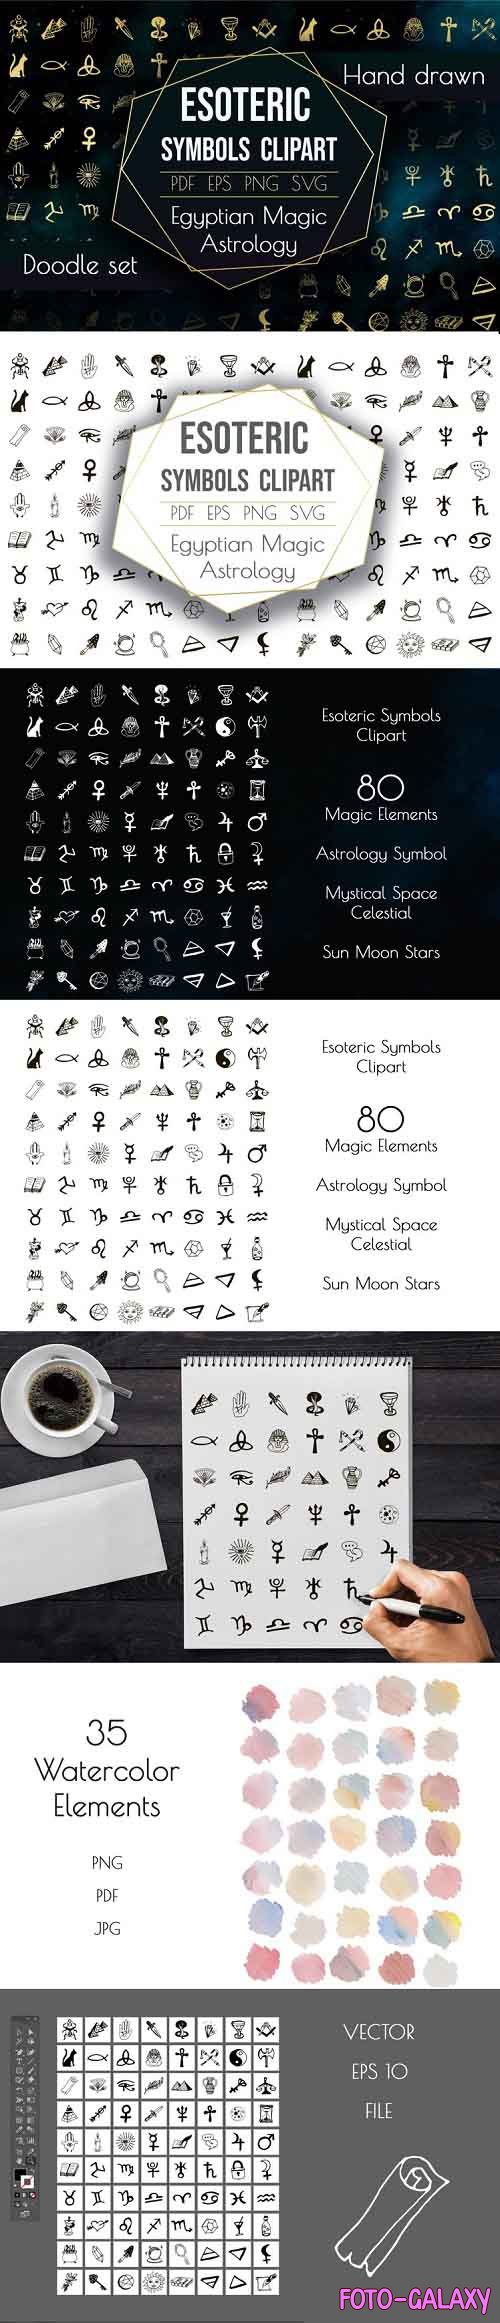 Esoteric Symbols Clipart. Spiritual Sacred Magic Elements - 1040539